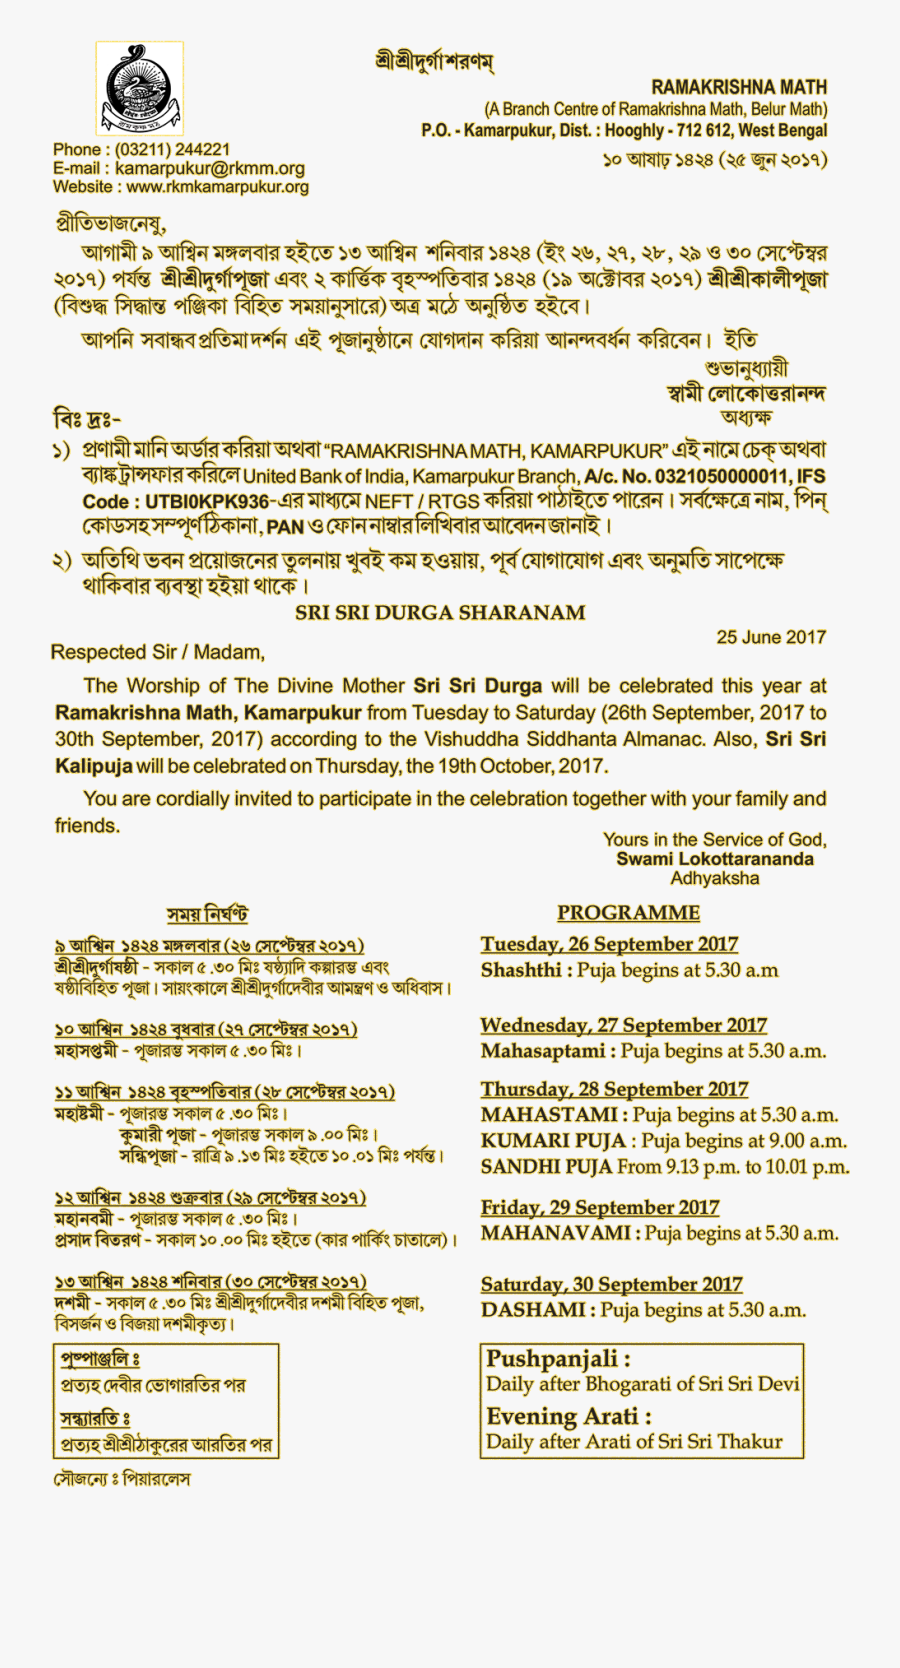 Sri Sri Durga Puja Celebration Programme Ramakrishna - Sri Sri Durga Belur Math Photo Download, Transparent Clipart